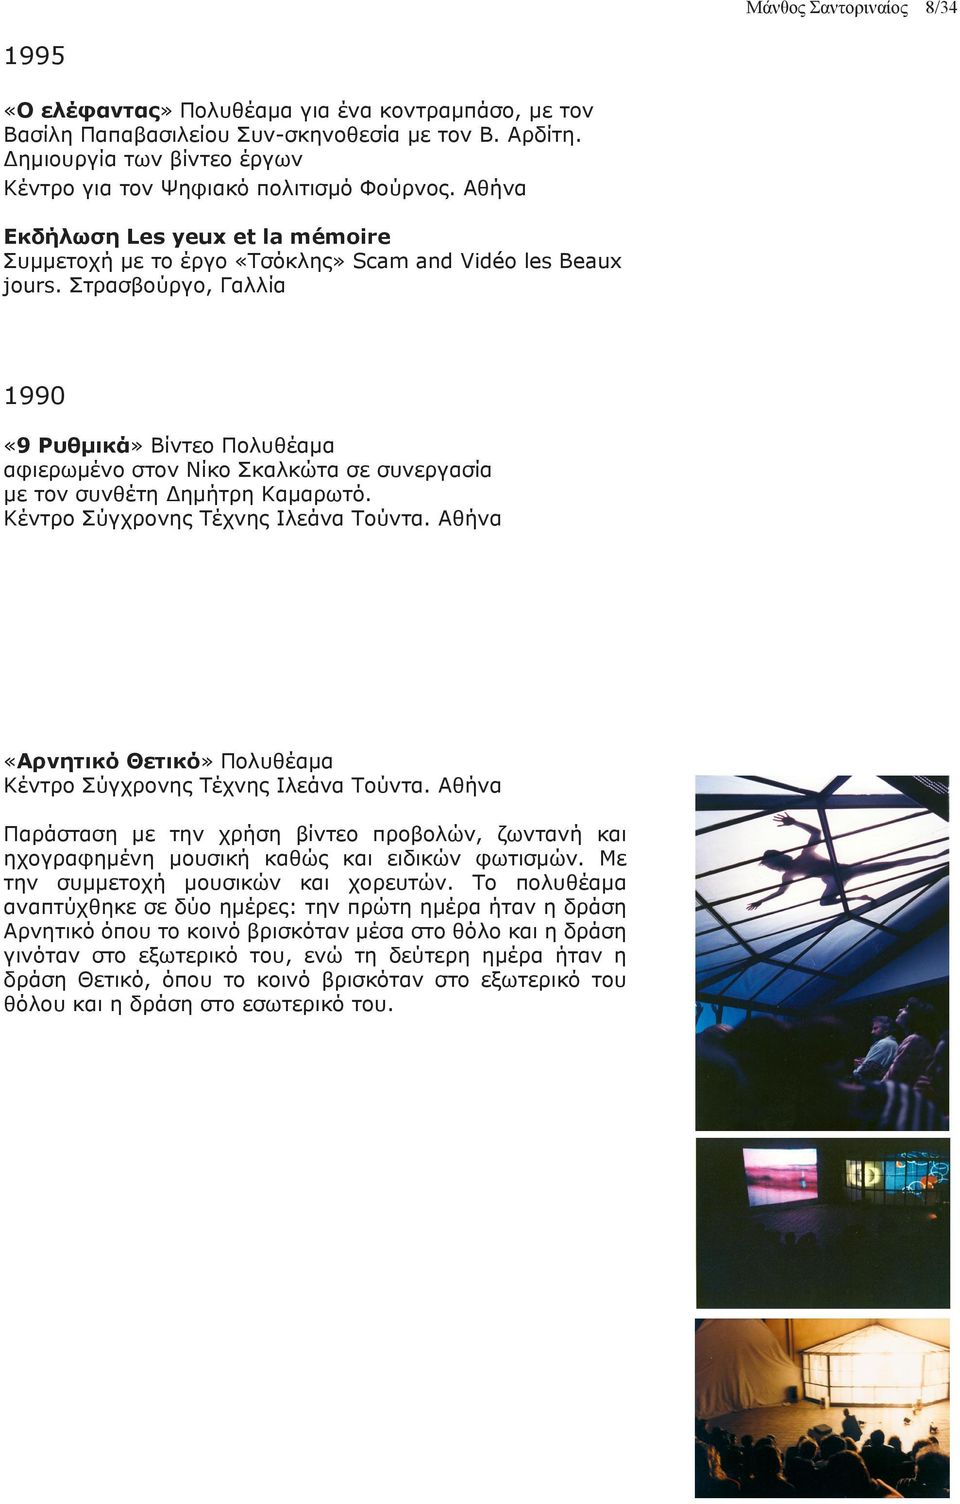 Στρασβούργο, Γαλλία 1990 «9 Ρυθμικά» Βίντεο Πολυθέαμα αφιερωμένο στον Νίκο Σκαλκώτα σε συνεργασία με τον συνθέτη Δημήτρη Καμαρωτό. Κέντρο Σύγχρονης Τέχνης Ιλεάνα Τούντα.